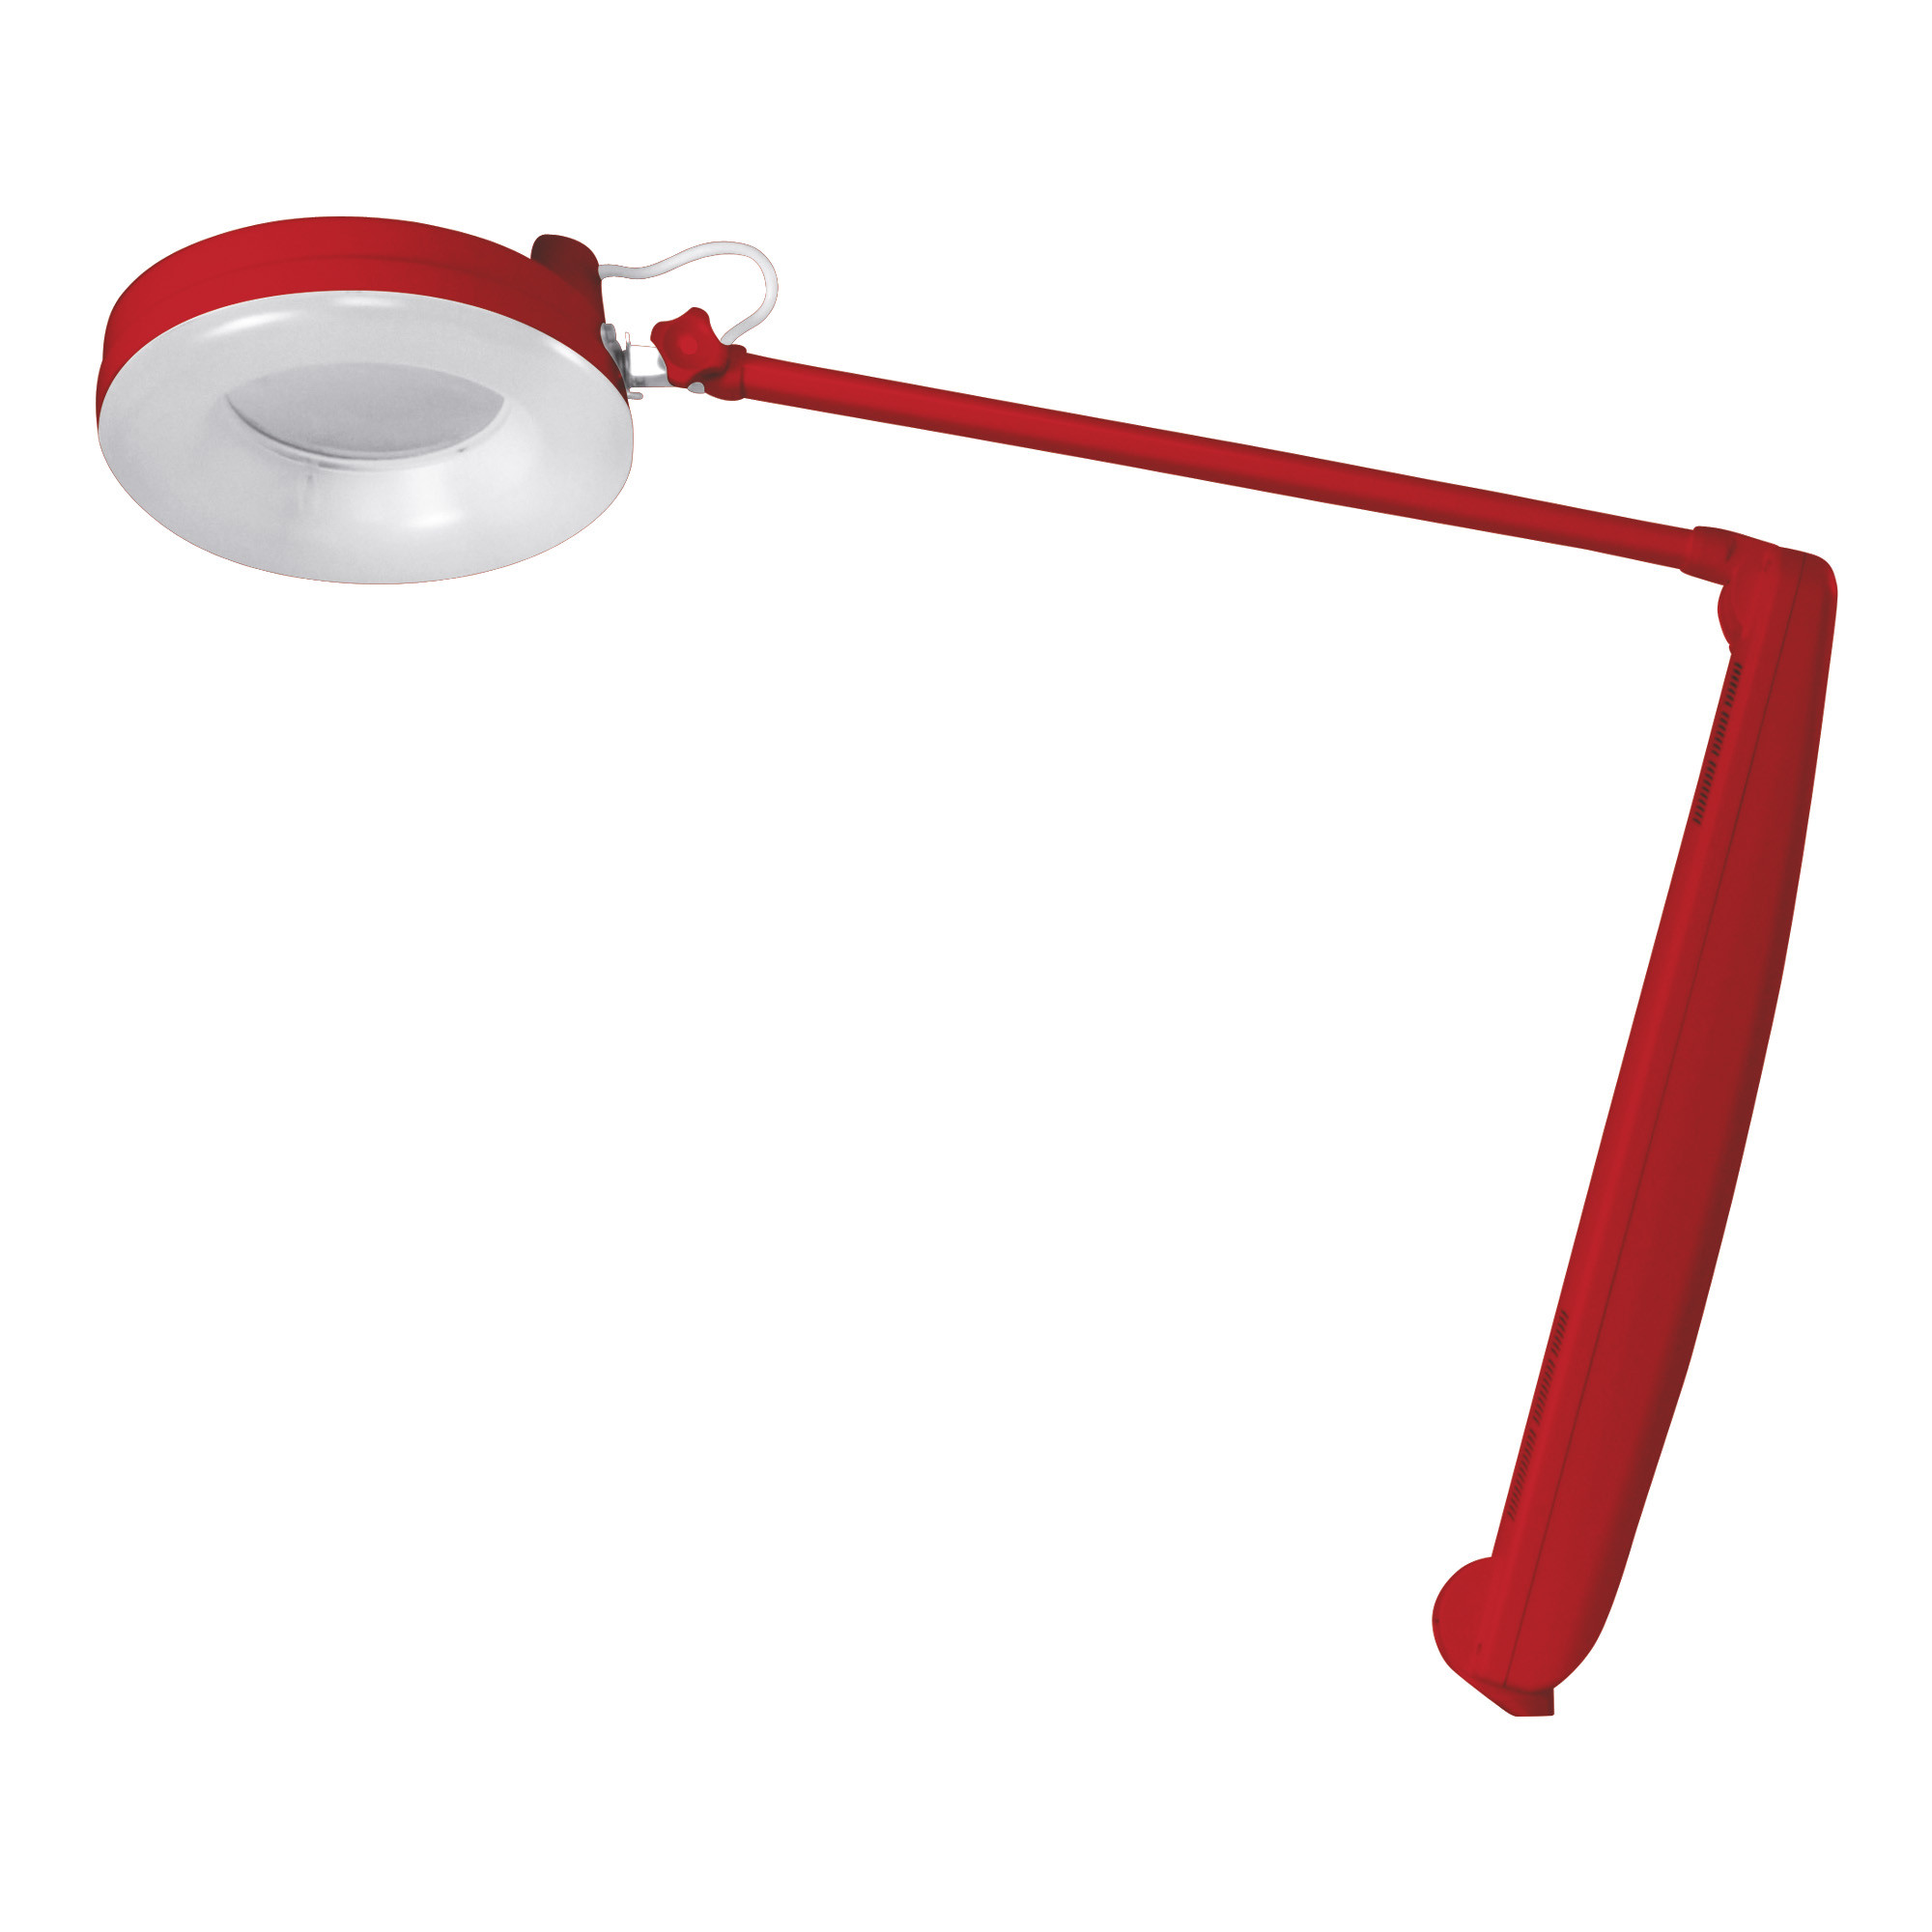 Afma Evo Lampe mit Neonlicht und roter 3-Diopter-Lupe